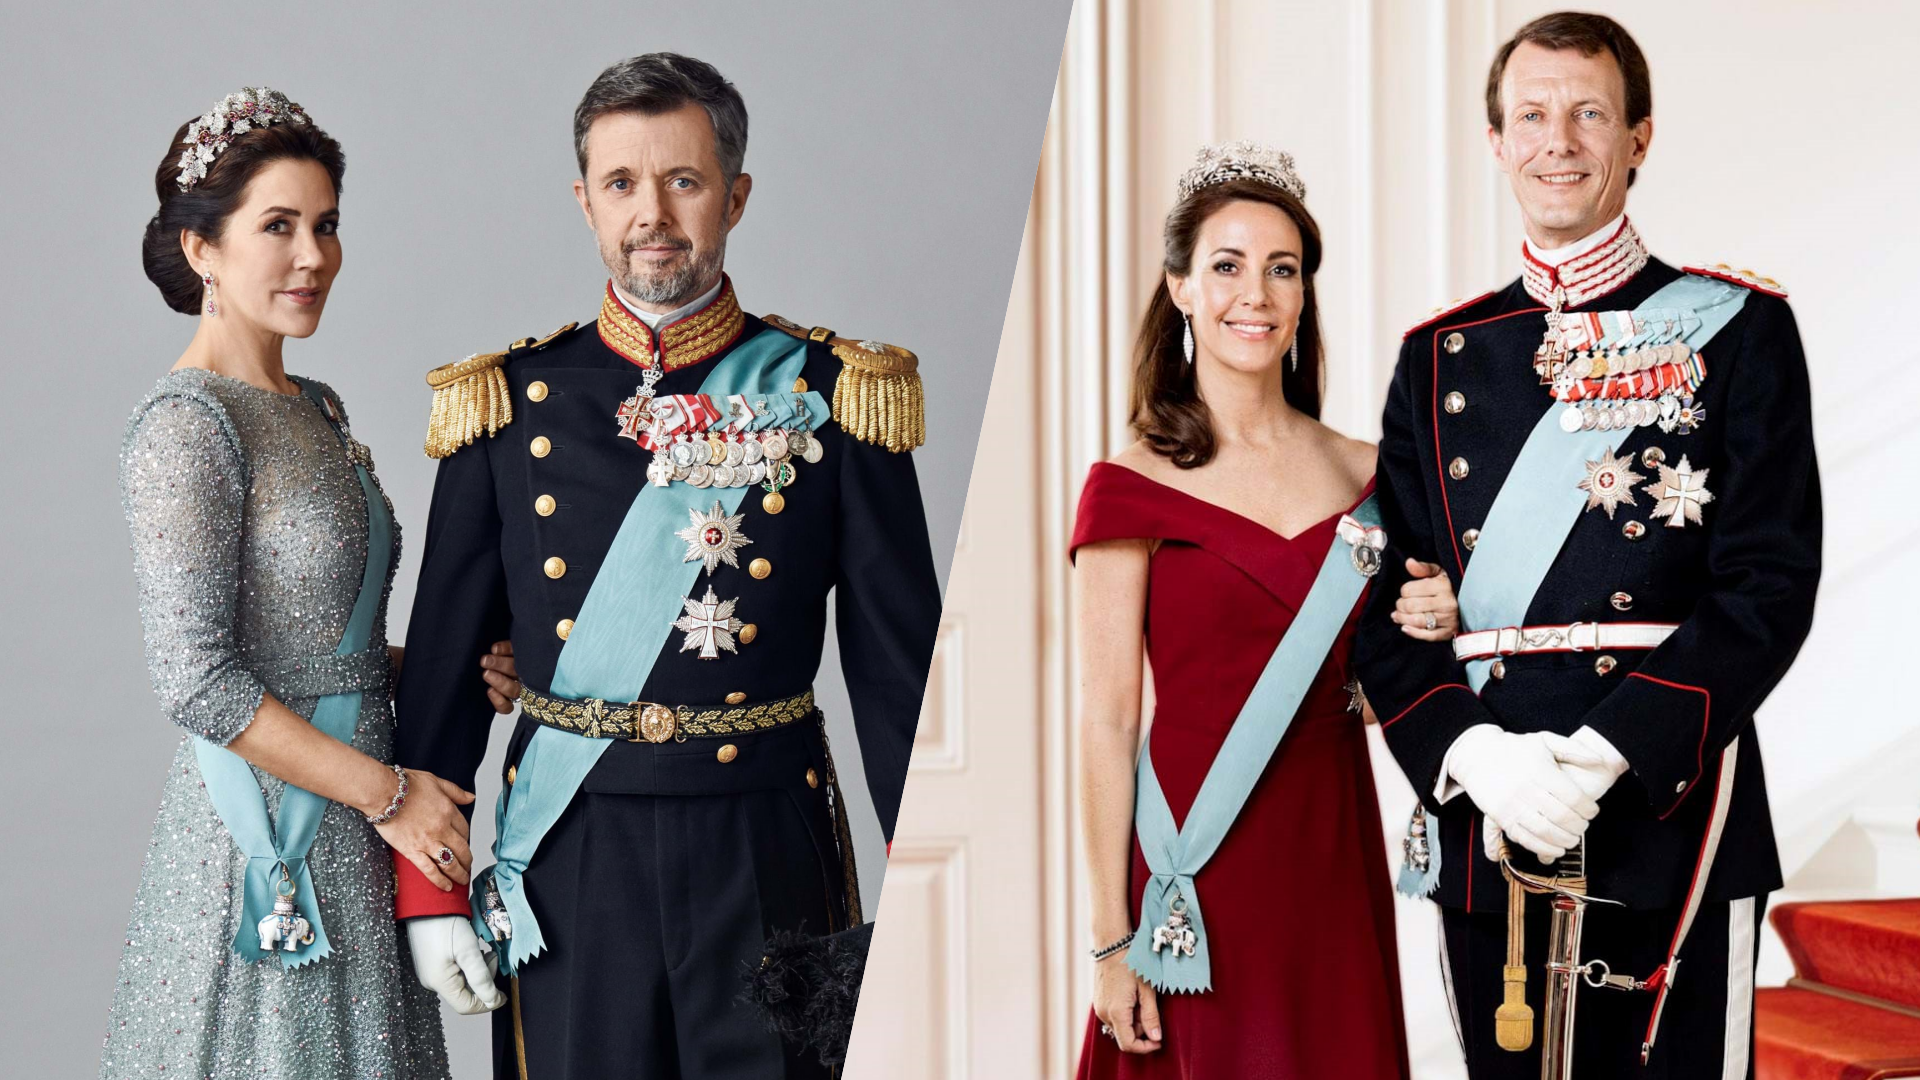 Tanskan prinsessat Mary ja Marie leimataan usein kilpailijoiksi, mutta kiistan juurisyyt tuntuvat olevan kuninkaallisten parien erilaisissa rooleissa.